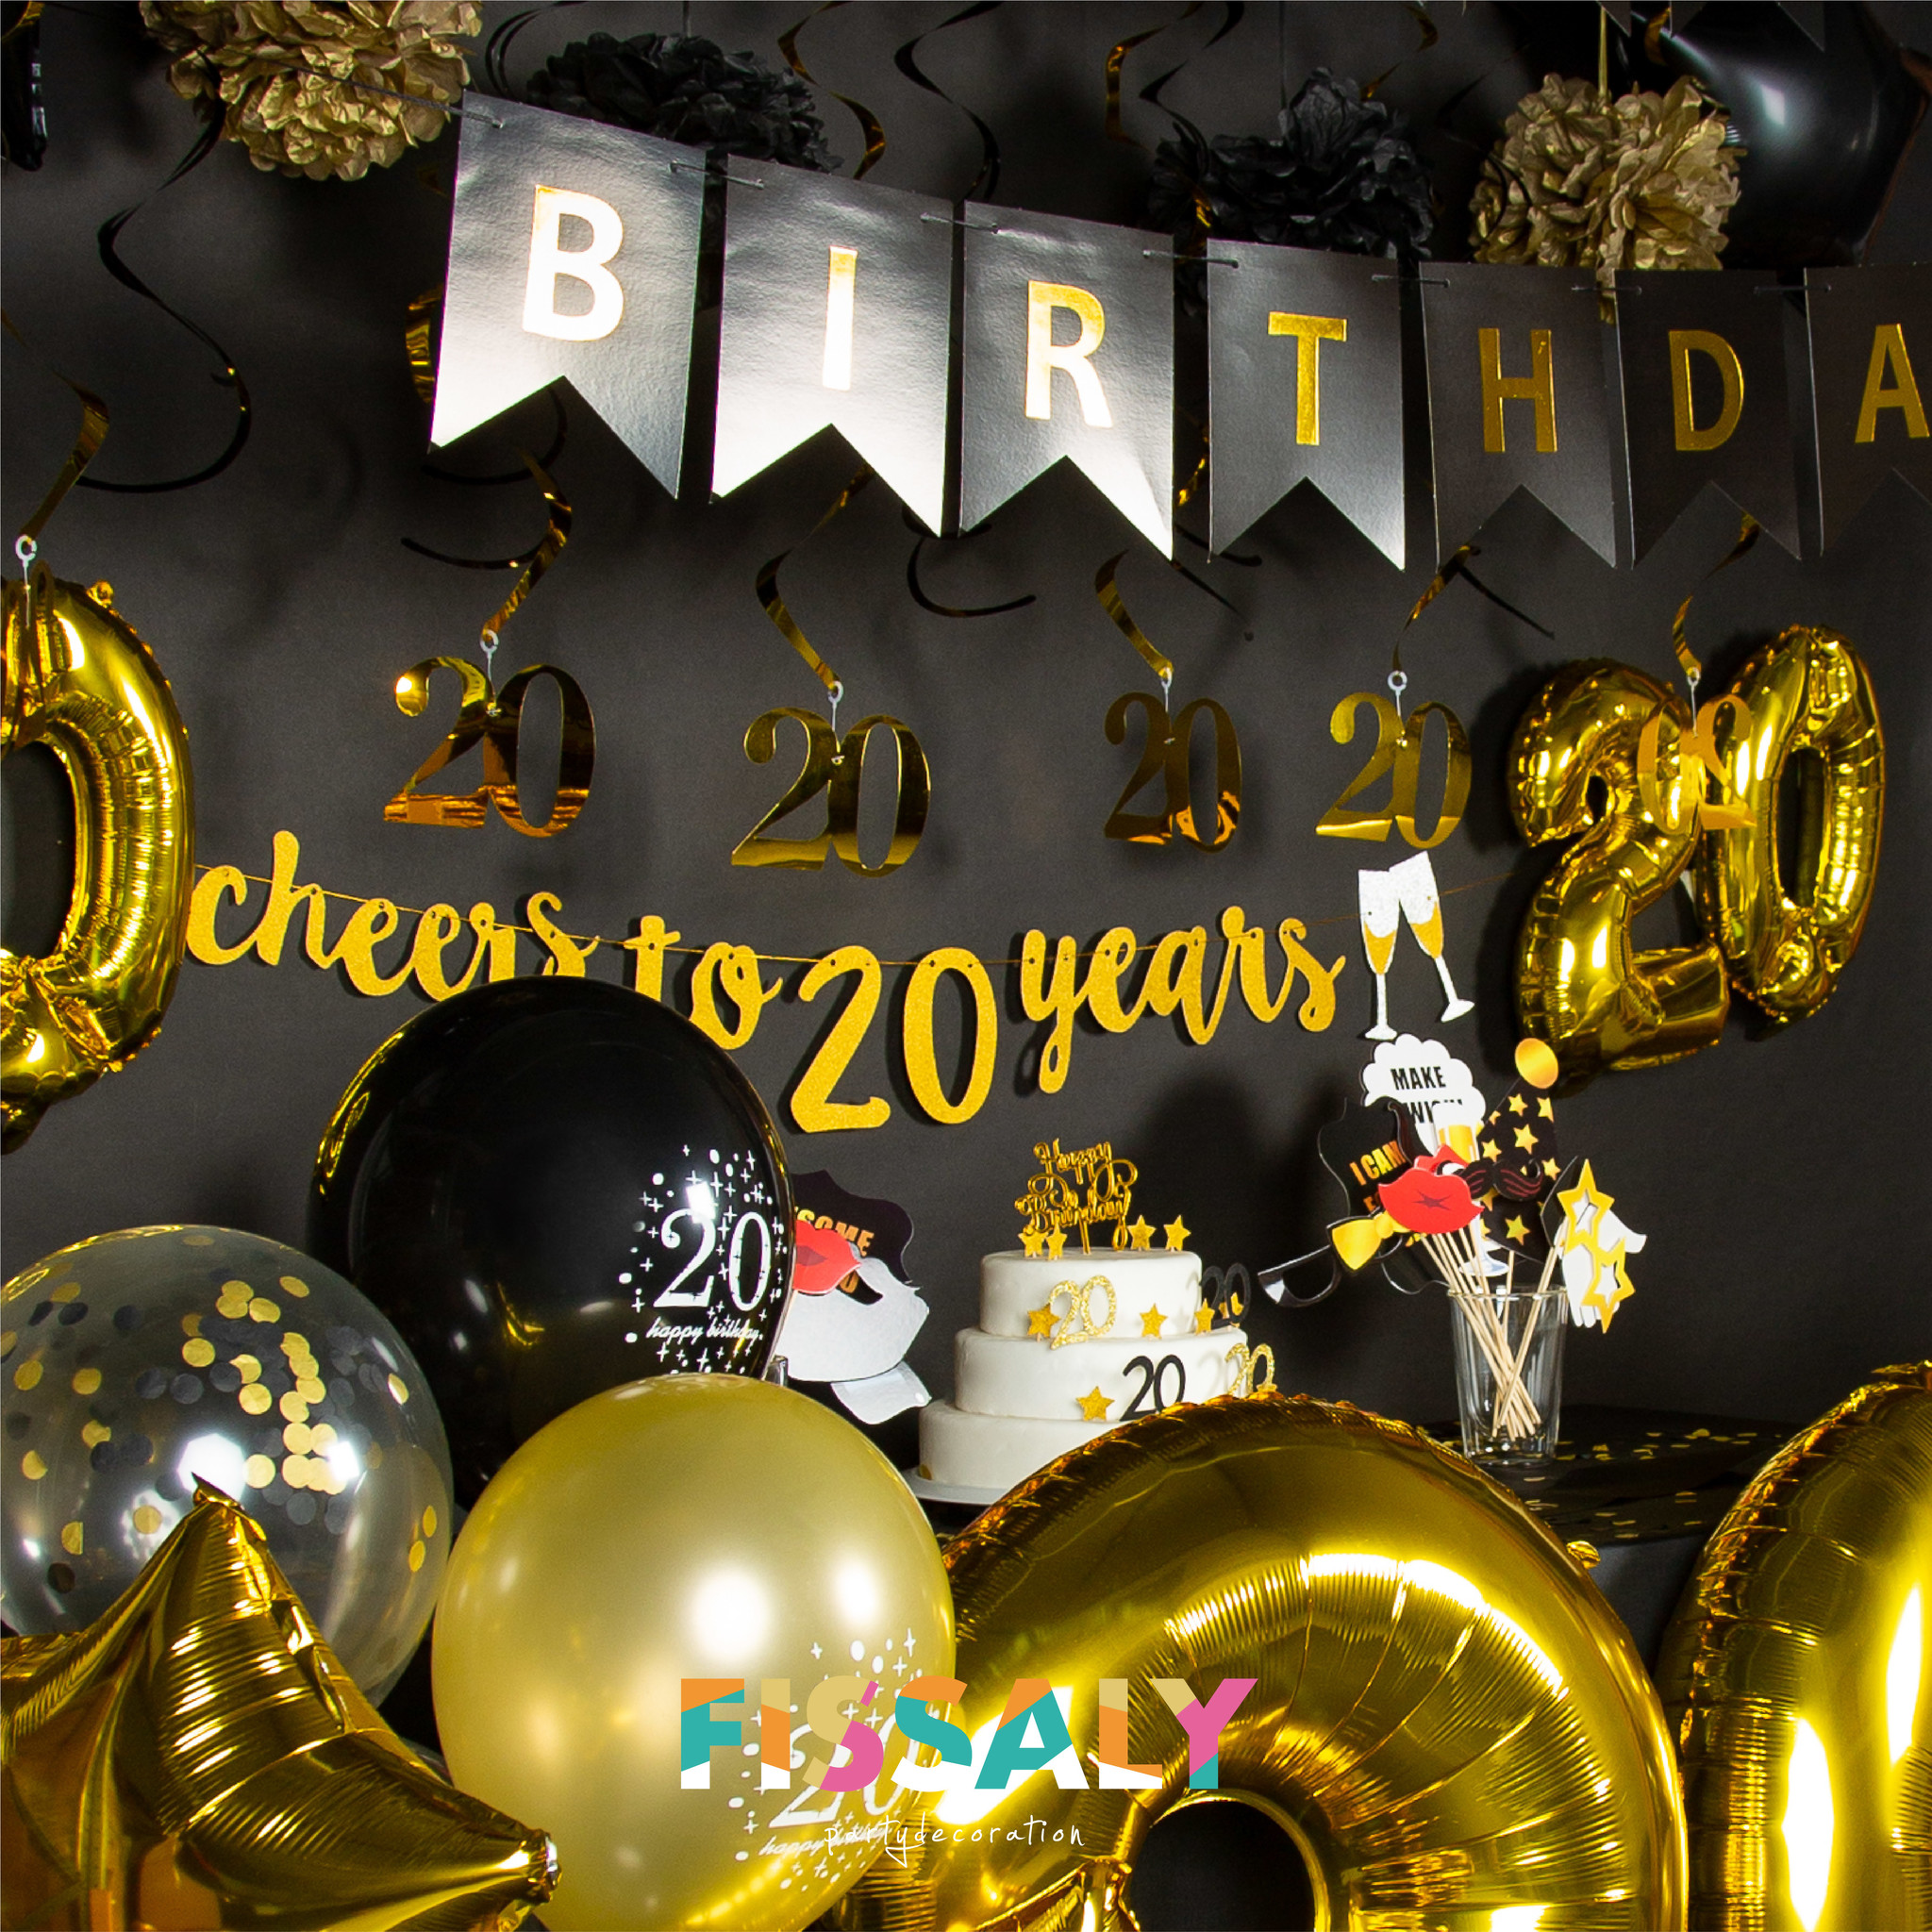 Drama ik ben trots Rechtsaf Fissaly® 20 Jaar Verjaardag Decoratie Versiering - Ballonnen – Jubileum Man  & Vrouw - Zwart en Goud - Fissaly